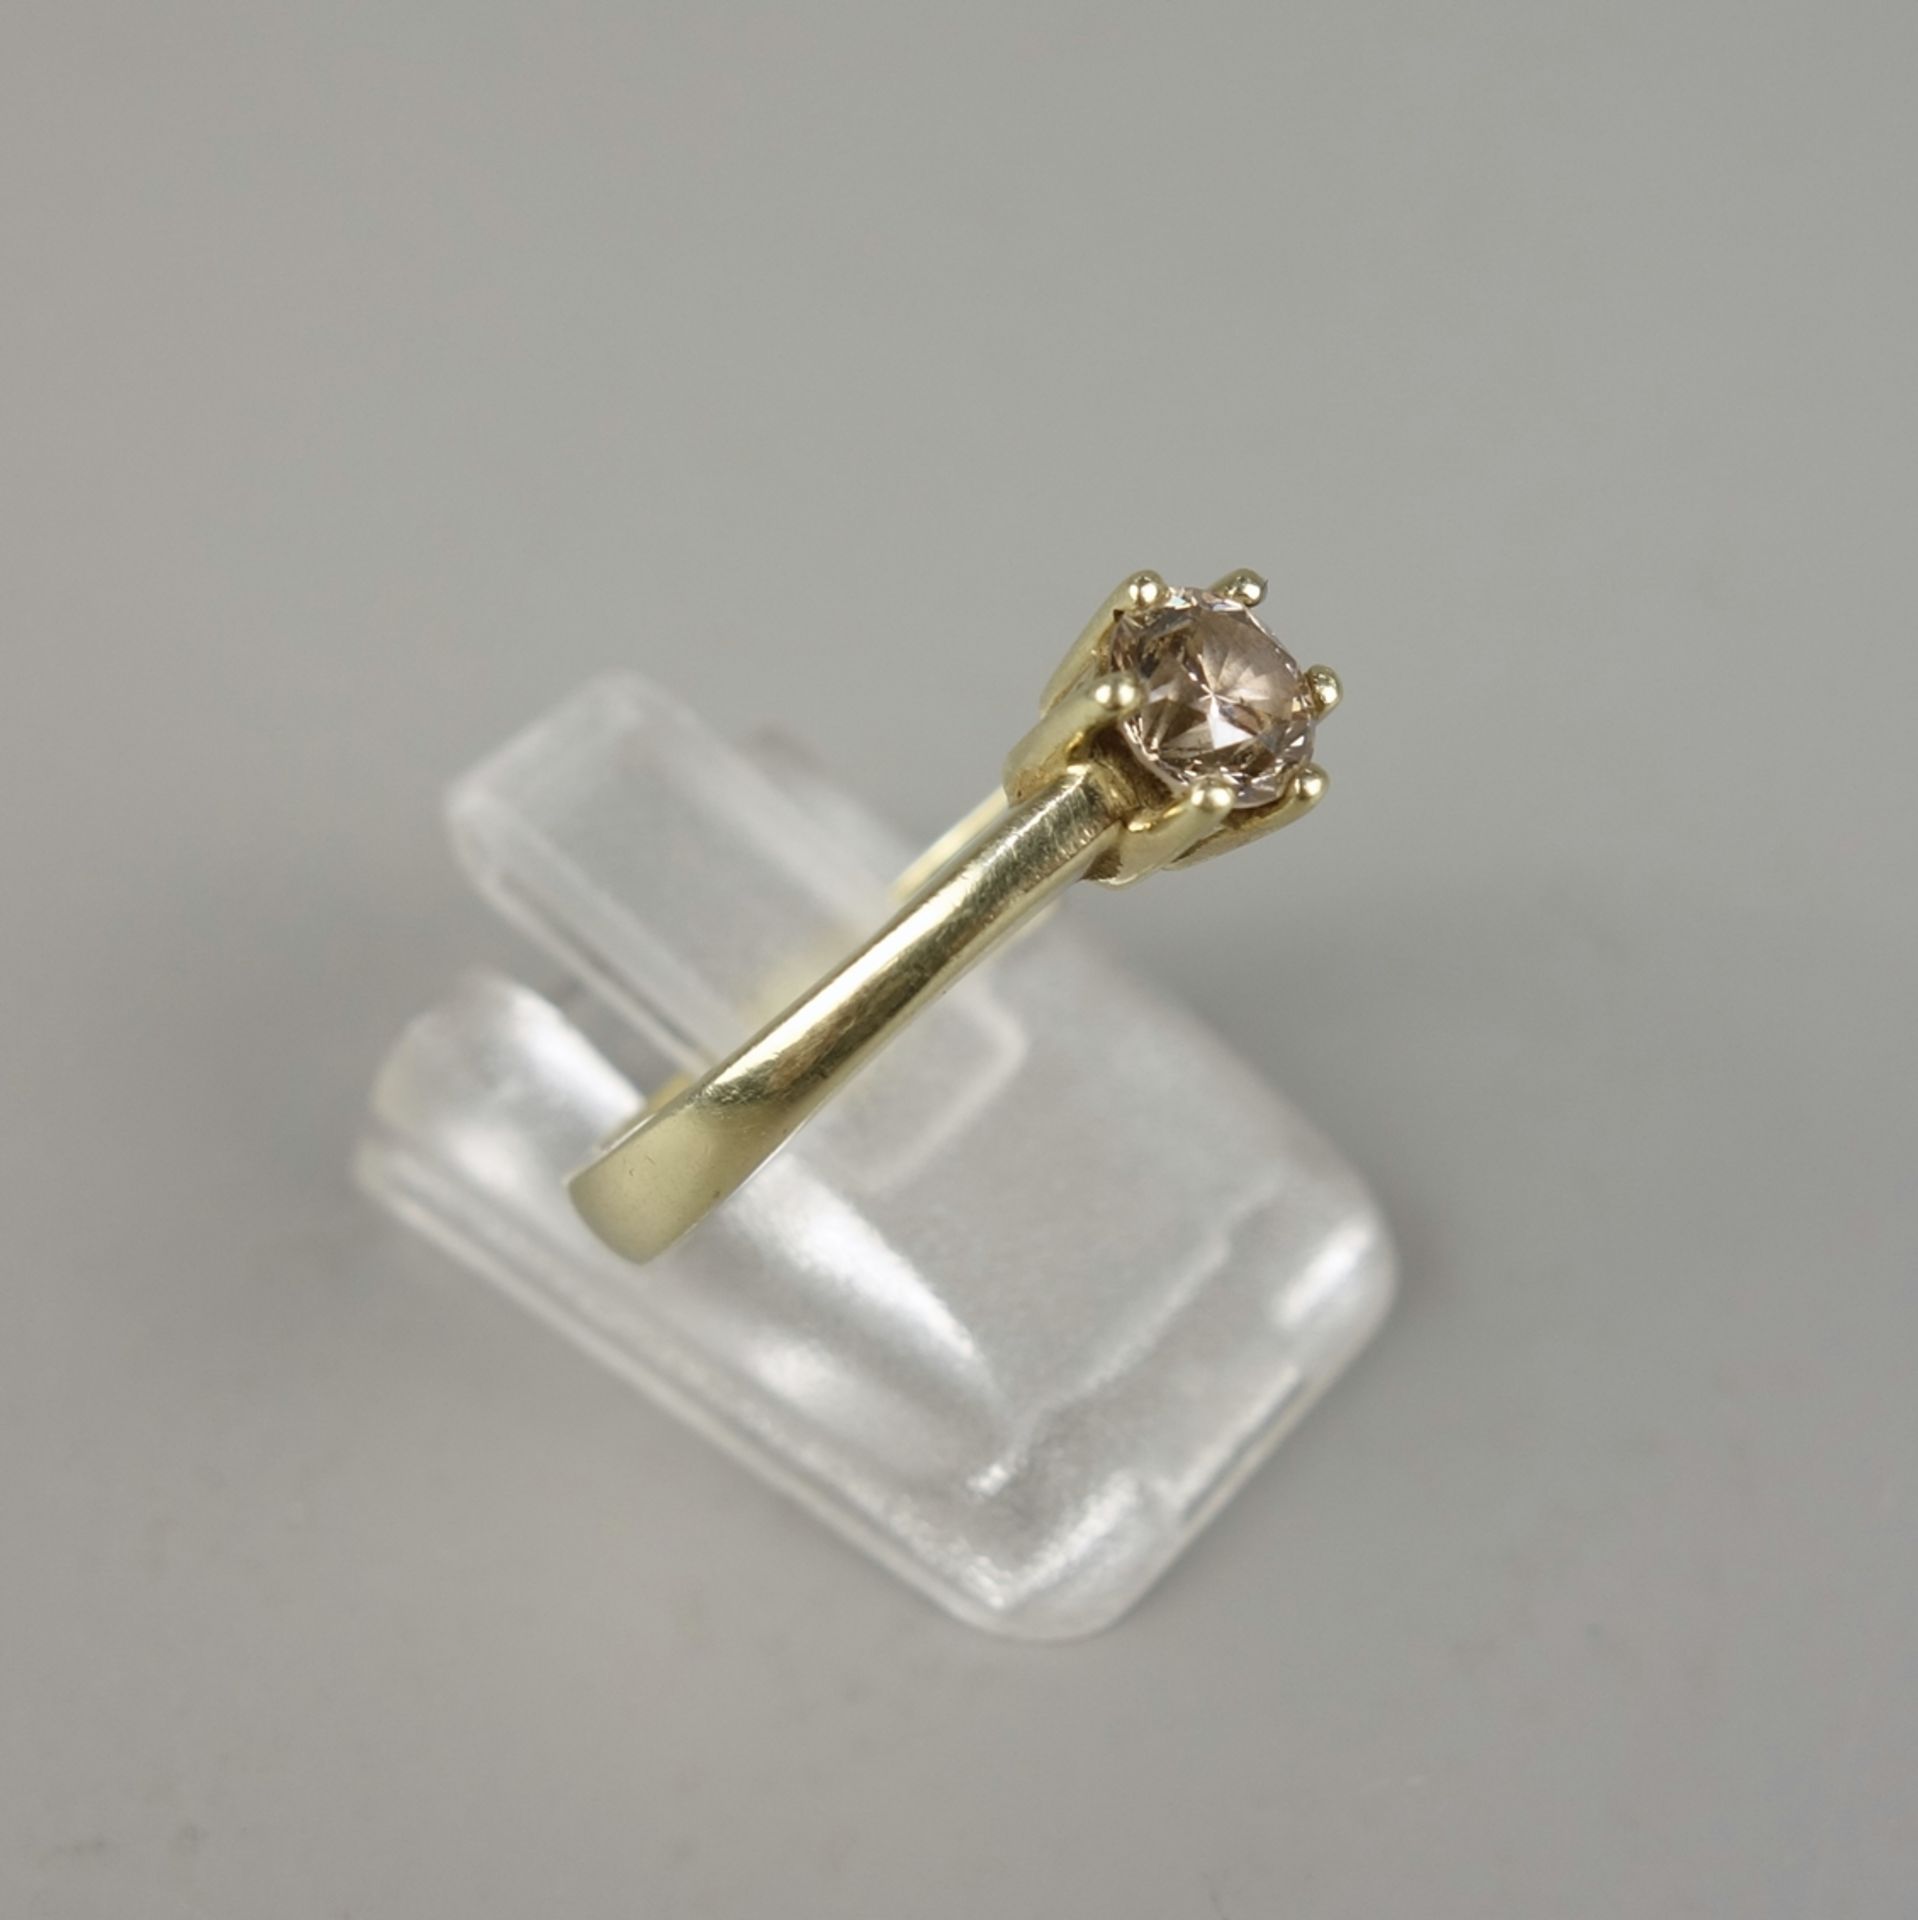 Solitaire-Ring, 585er Gold, Gew.3,51g, Fancy-Brillant, 0,50ct (gez.), Krappenfa